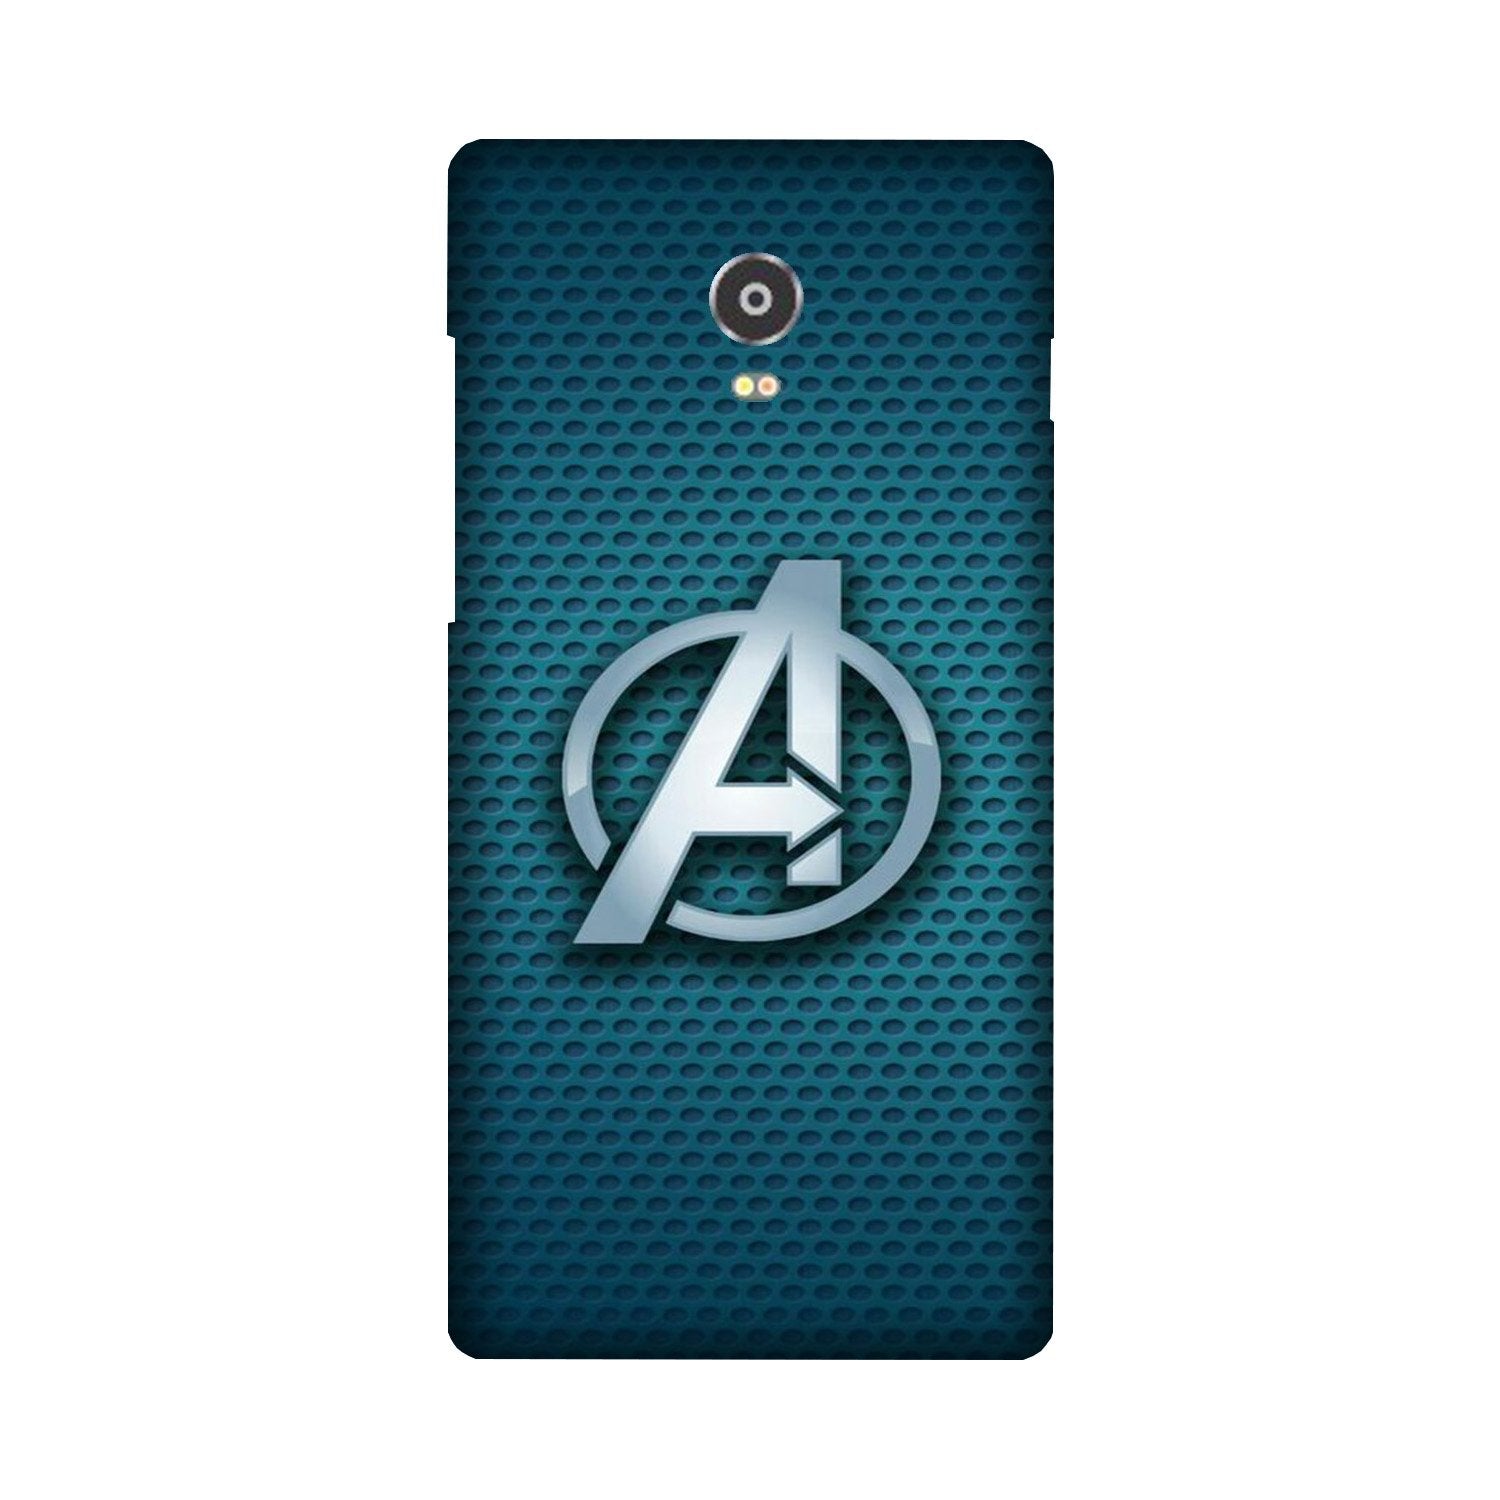 Avengers Case for Lenovo Vibe P1 (Design No. 246)